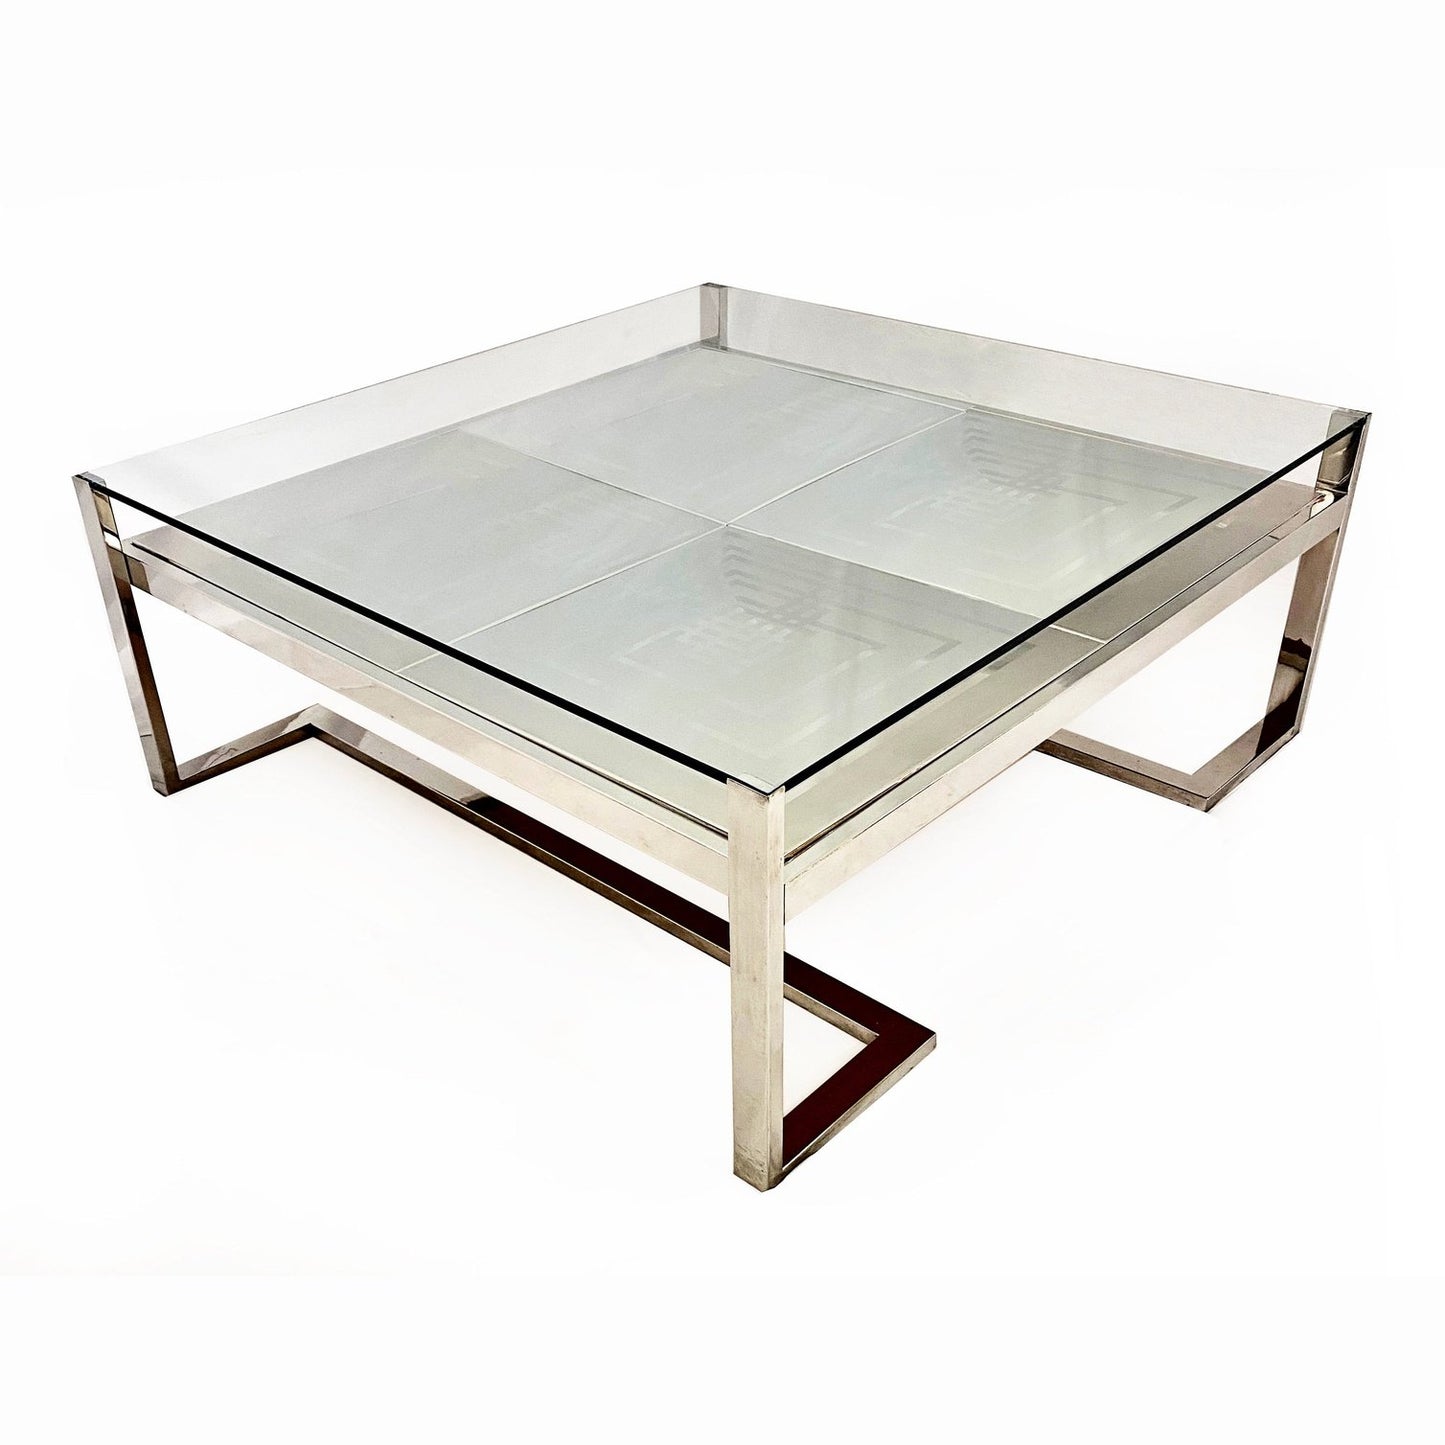 Romeo Rega Italian Geometric Decor Clear Glass Chrome 2 Tier Coffee Sofa Table